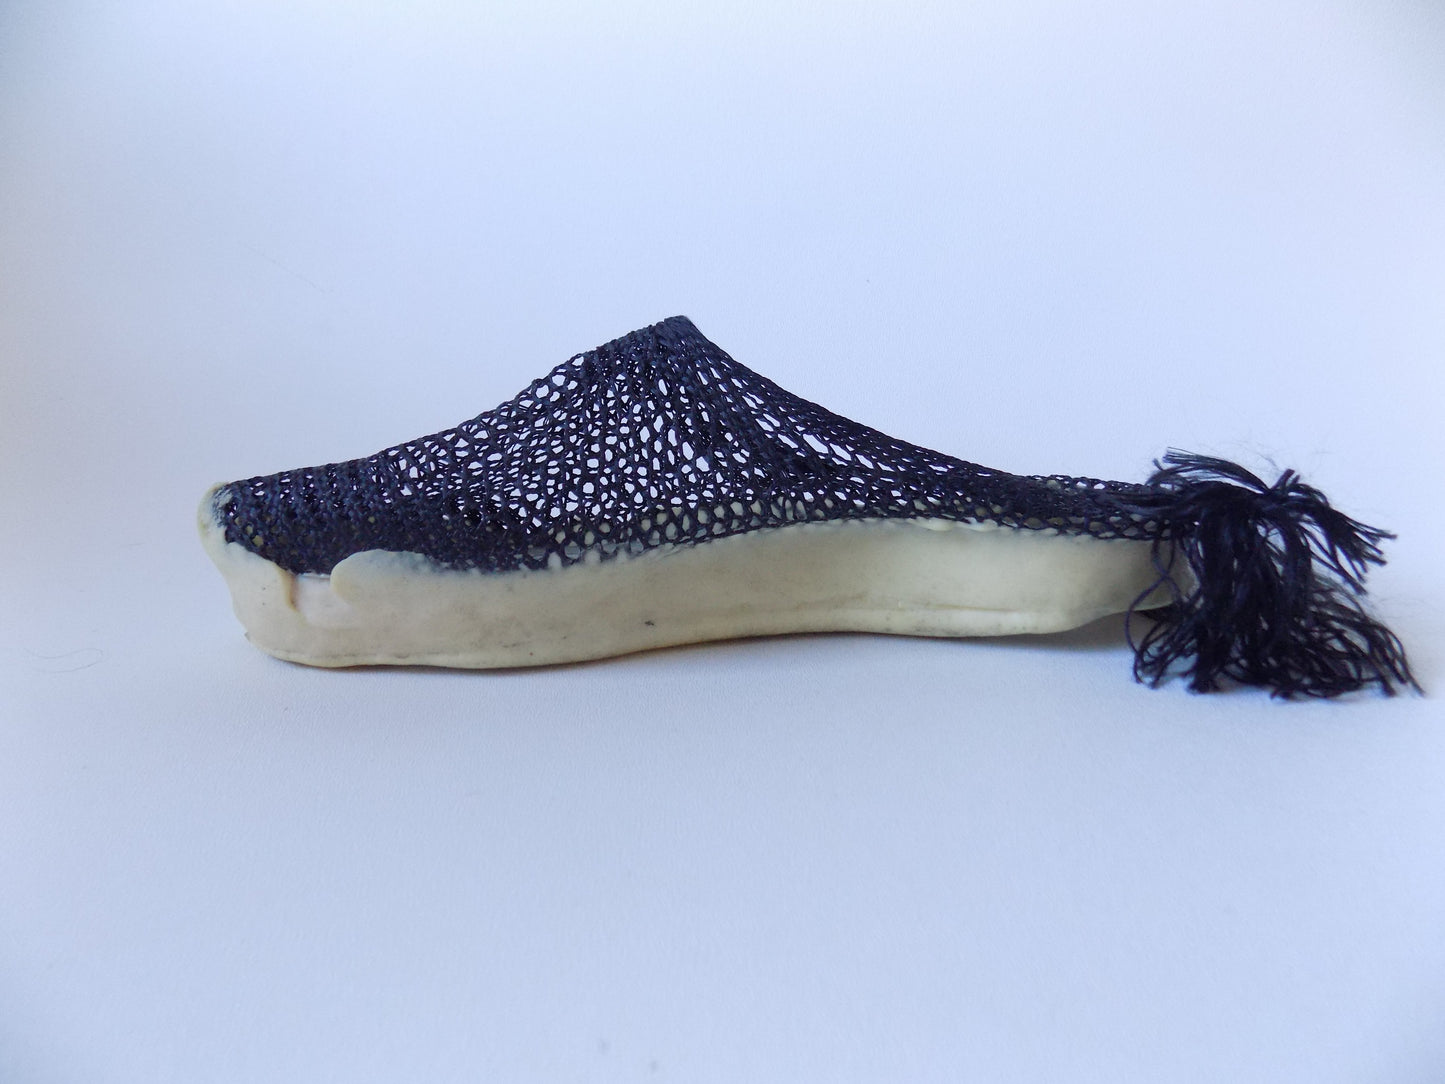 Footwear Designs Foam Sole Integration